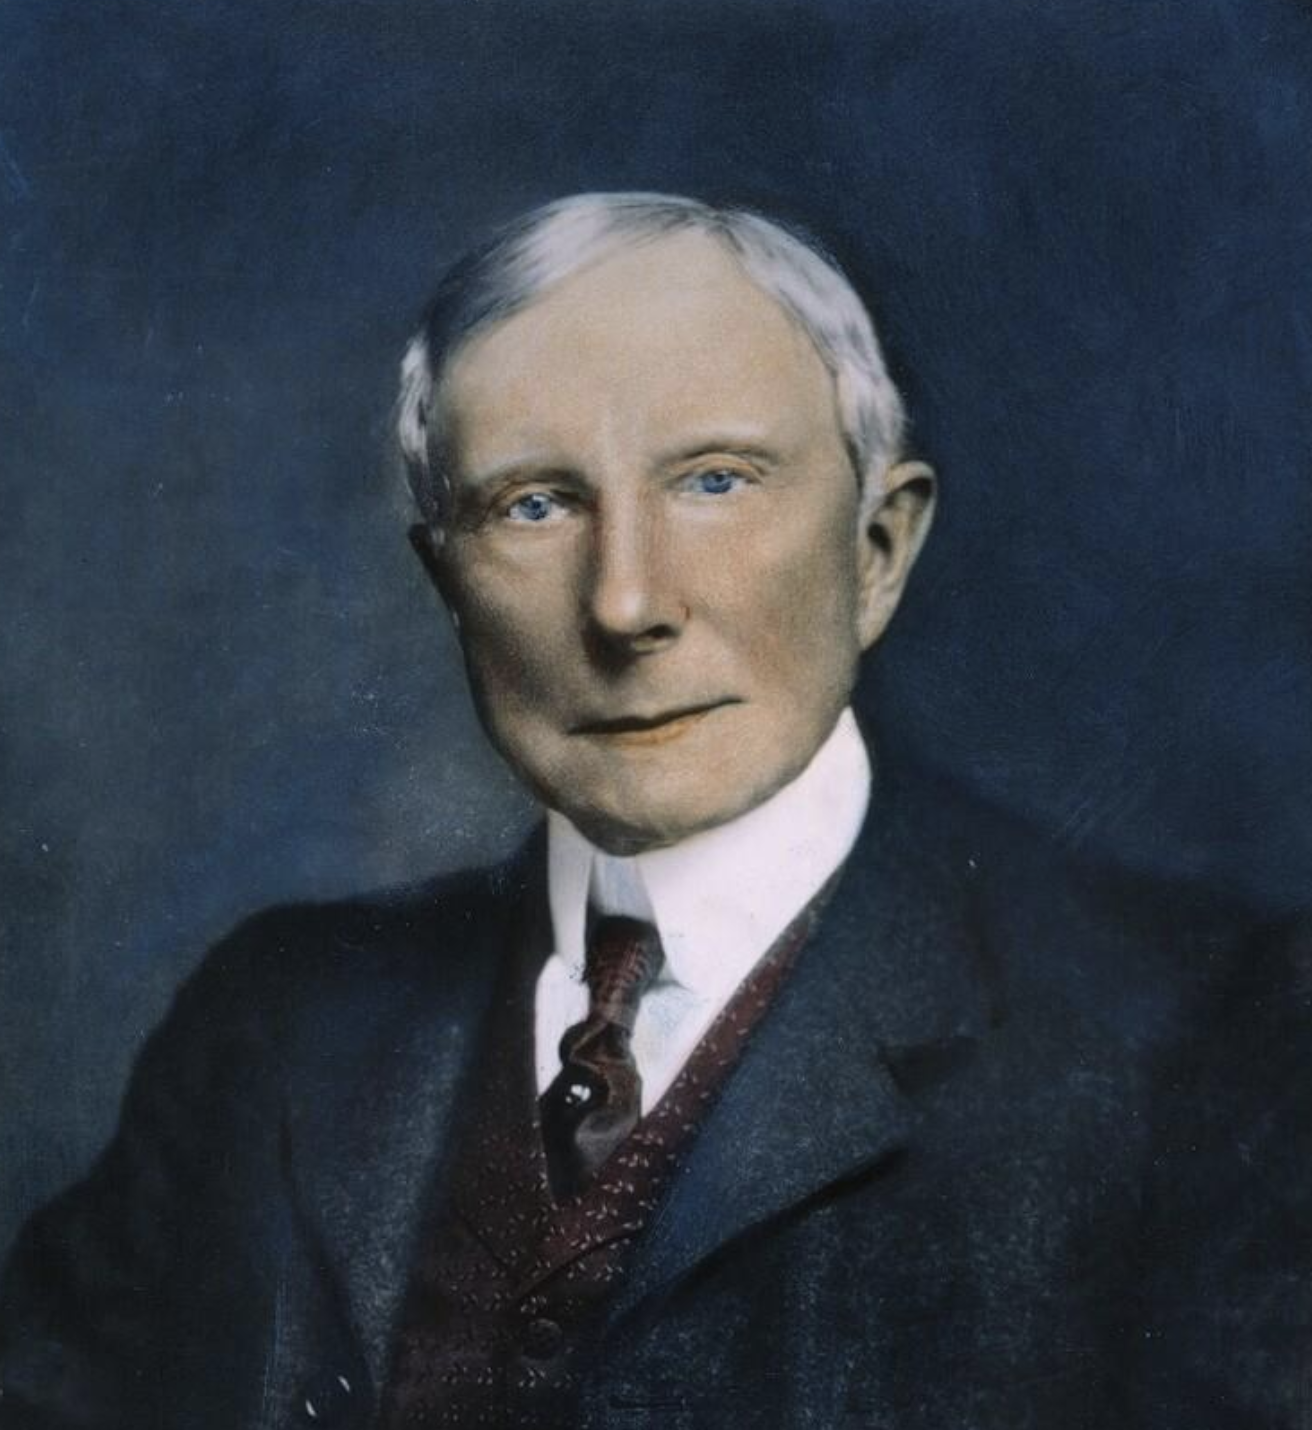 'Vua dầu mỏ' Rockefeller thẳng thắn: Muốn làm người tốt thì đừng bào chữa cho thất bại, chúng ta không điều khiển được gió nhưng có thể chỉnh lại cánh buồm- Ảnh 1.